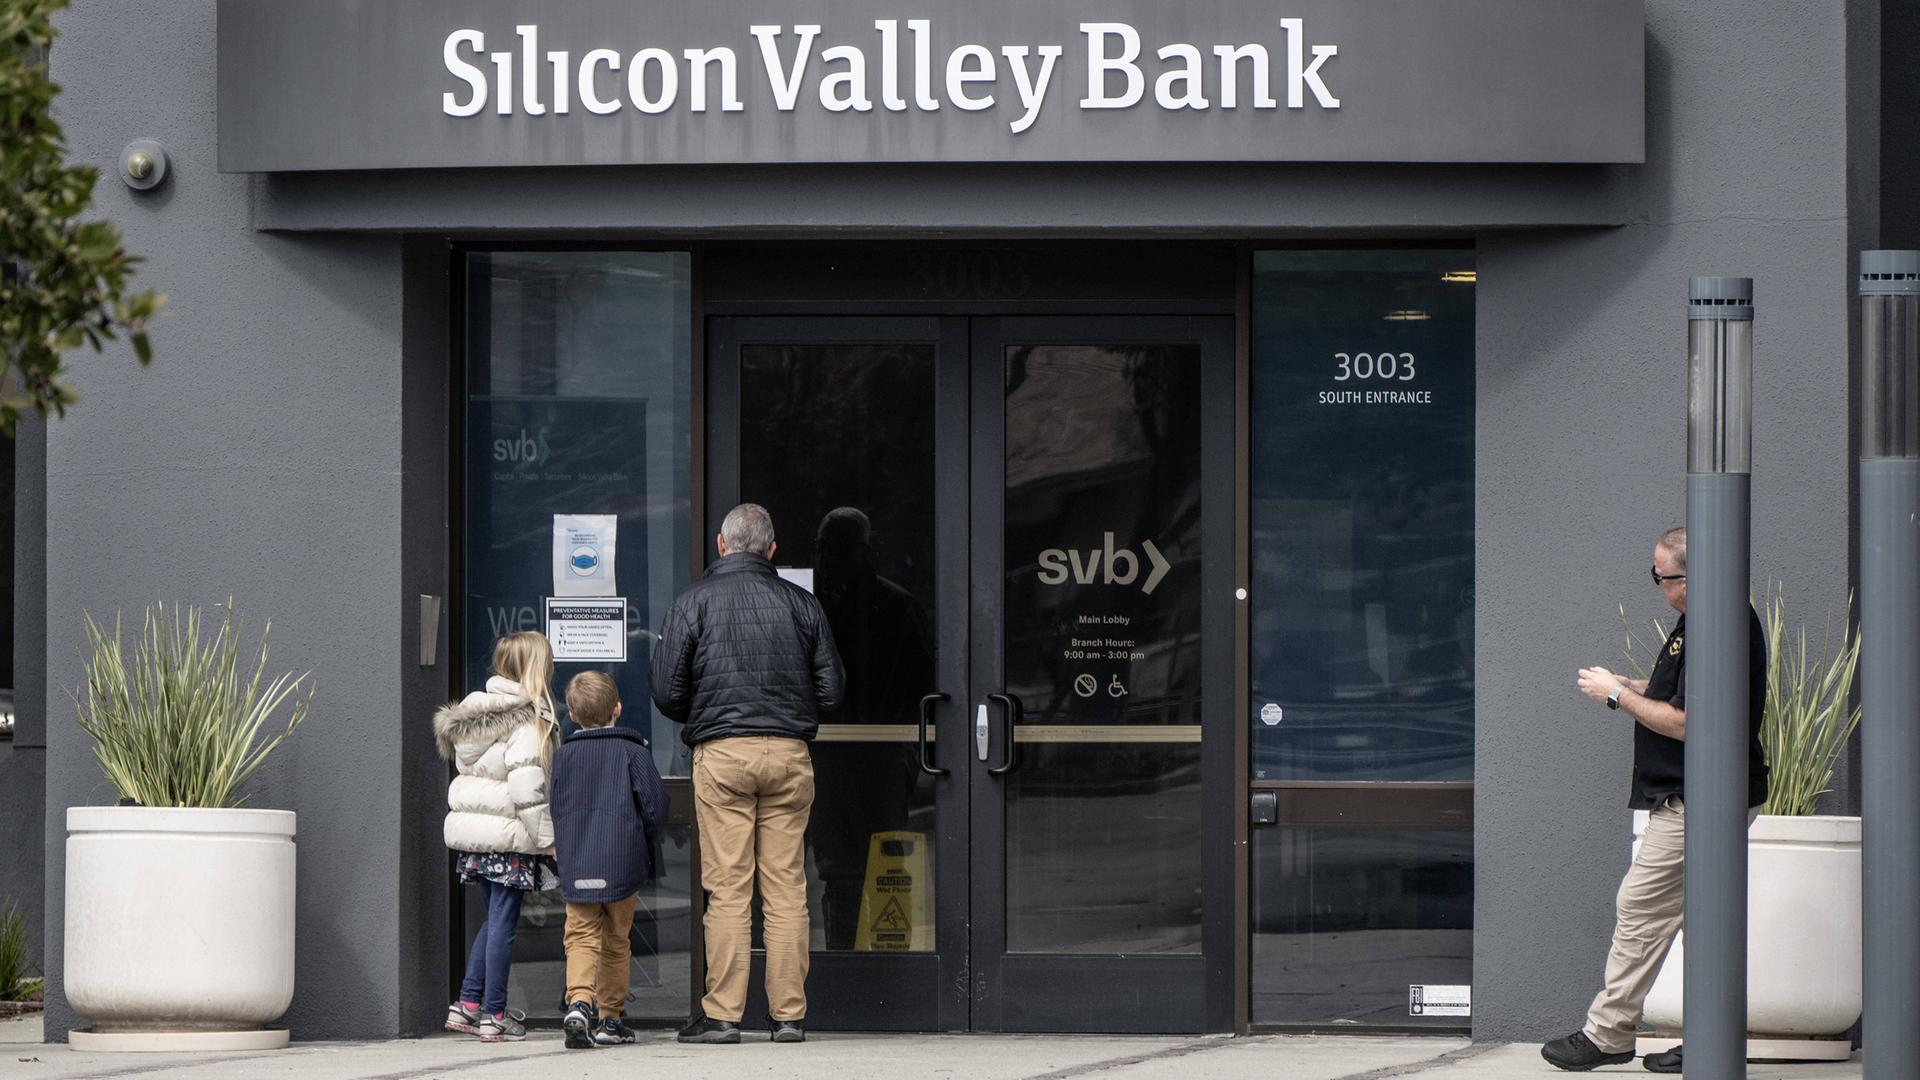 Vor einer Filiale der Silicon Valley Bank lesen ein älterer Mann und zwei Kinder eine an der Tür ausgehängte Bekanntmachung.